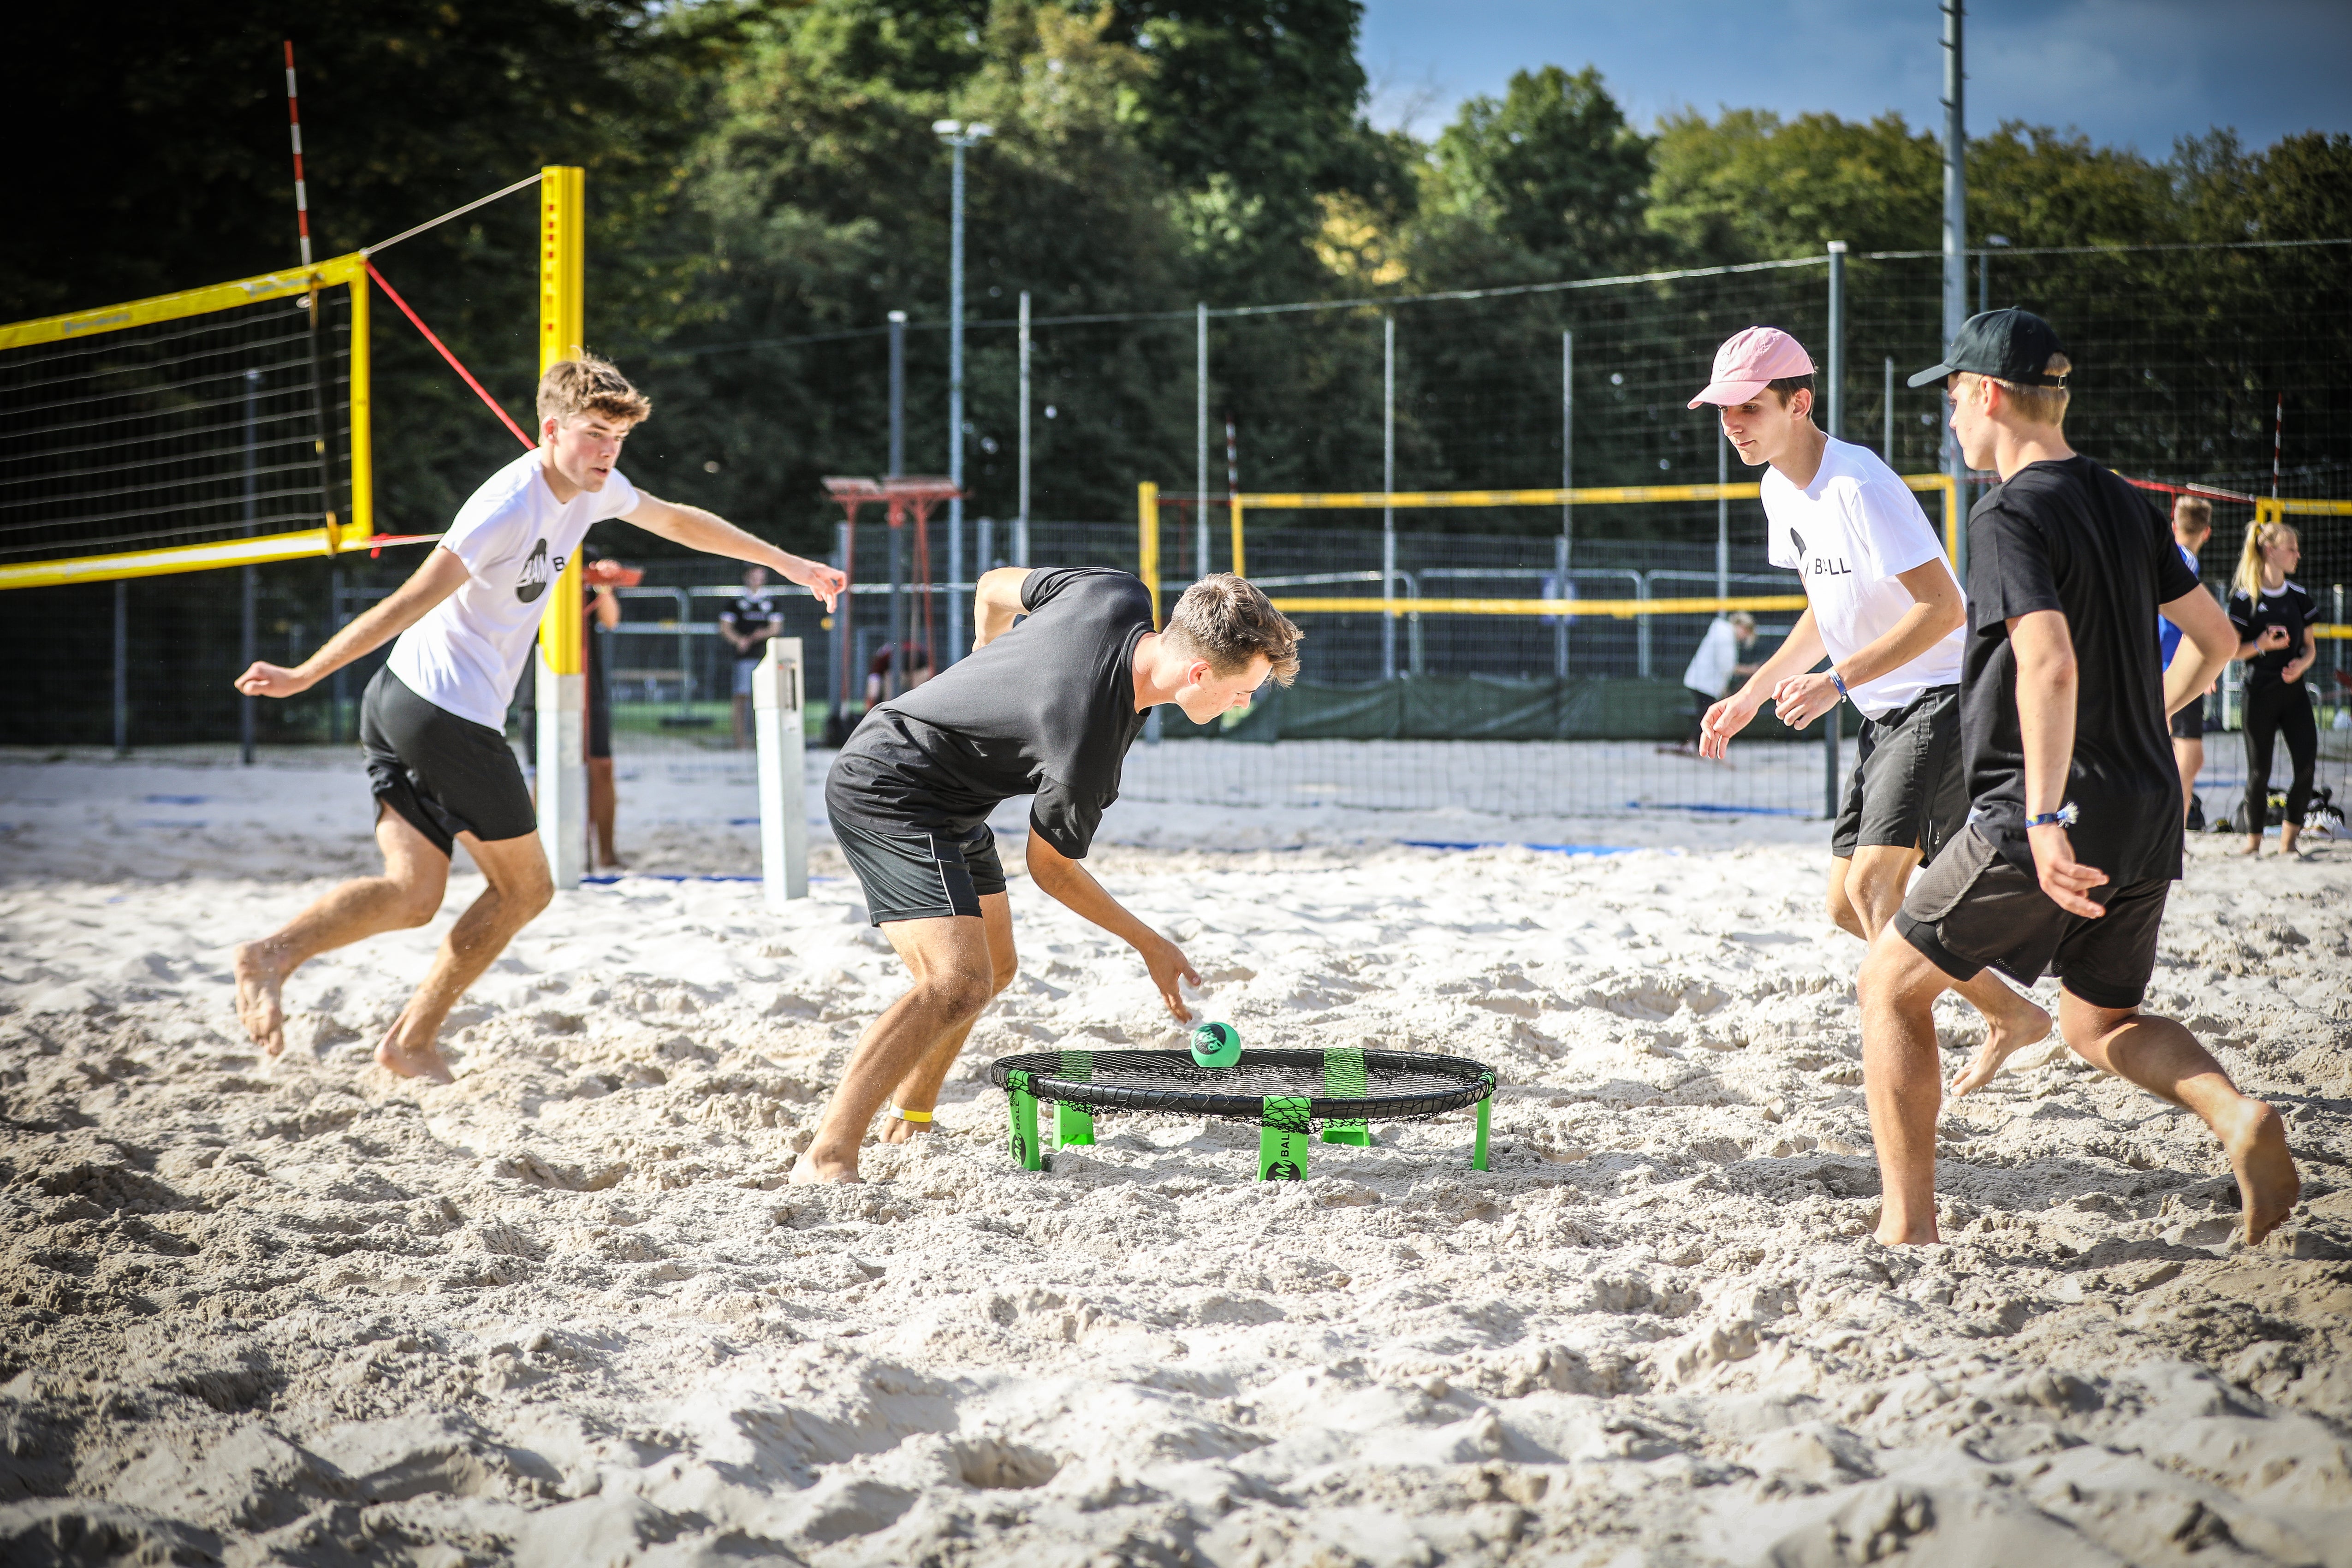 Vier Roundnet Spieler auf Sand, ein Sportler spielt einen kurzen Ball aufs Netz